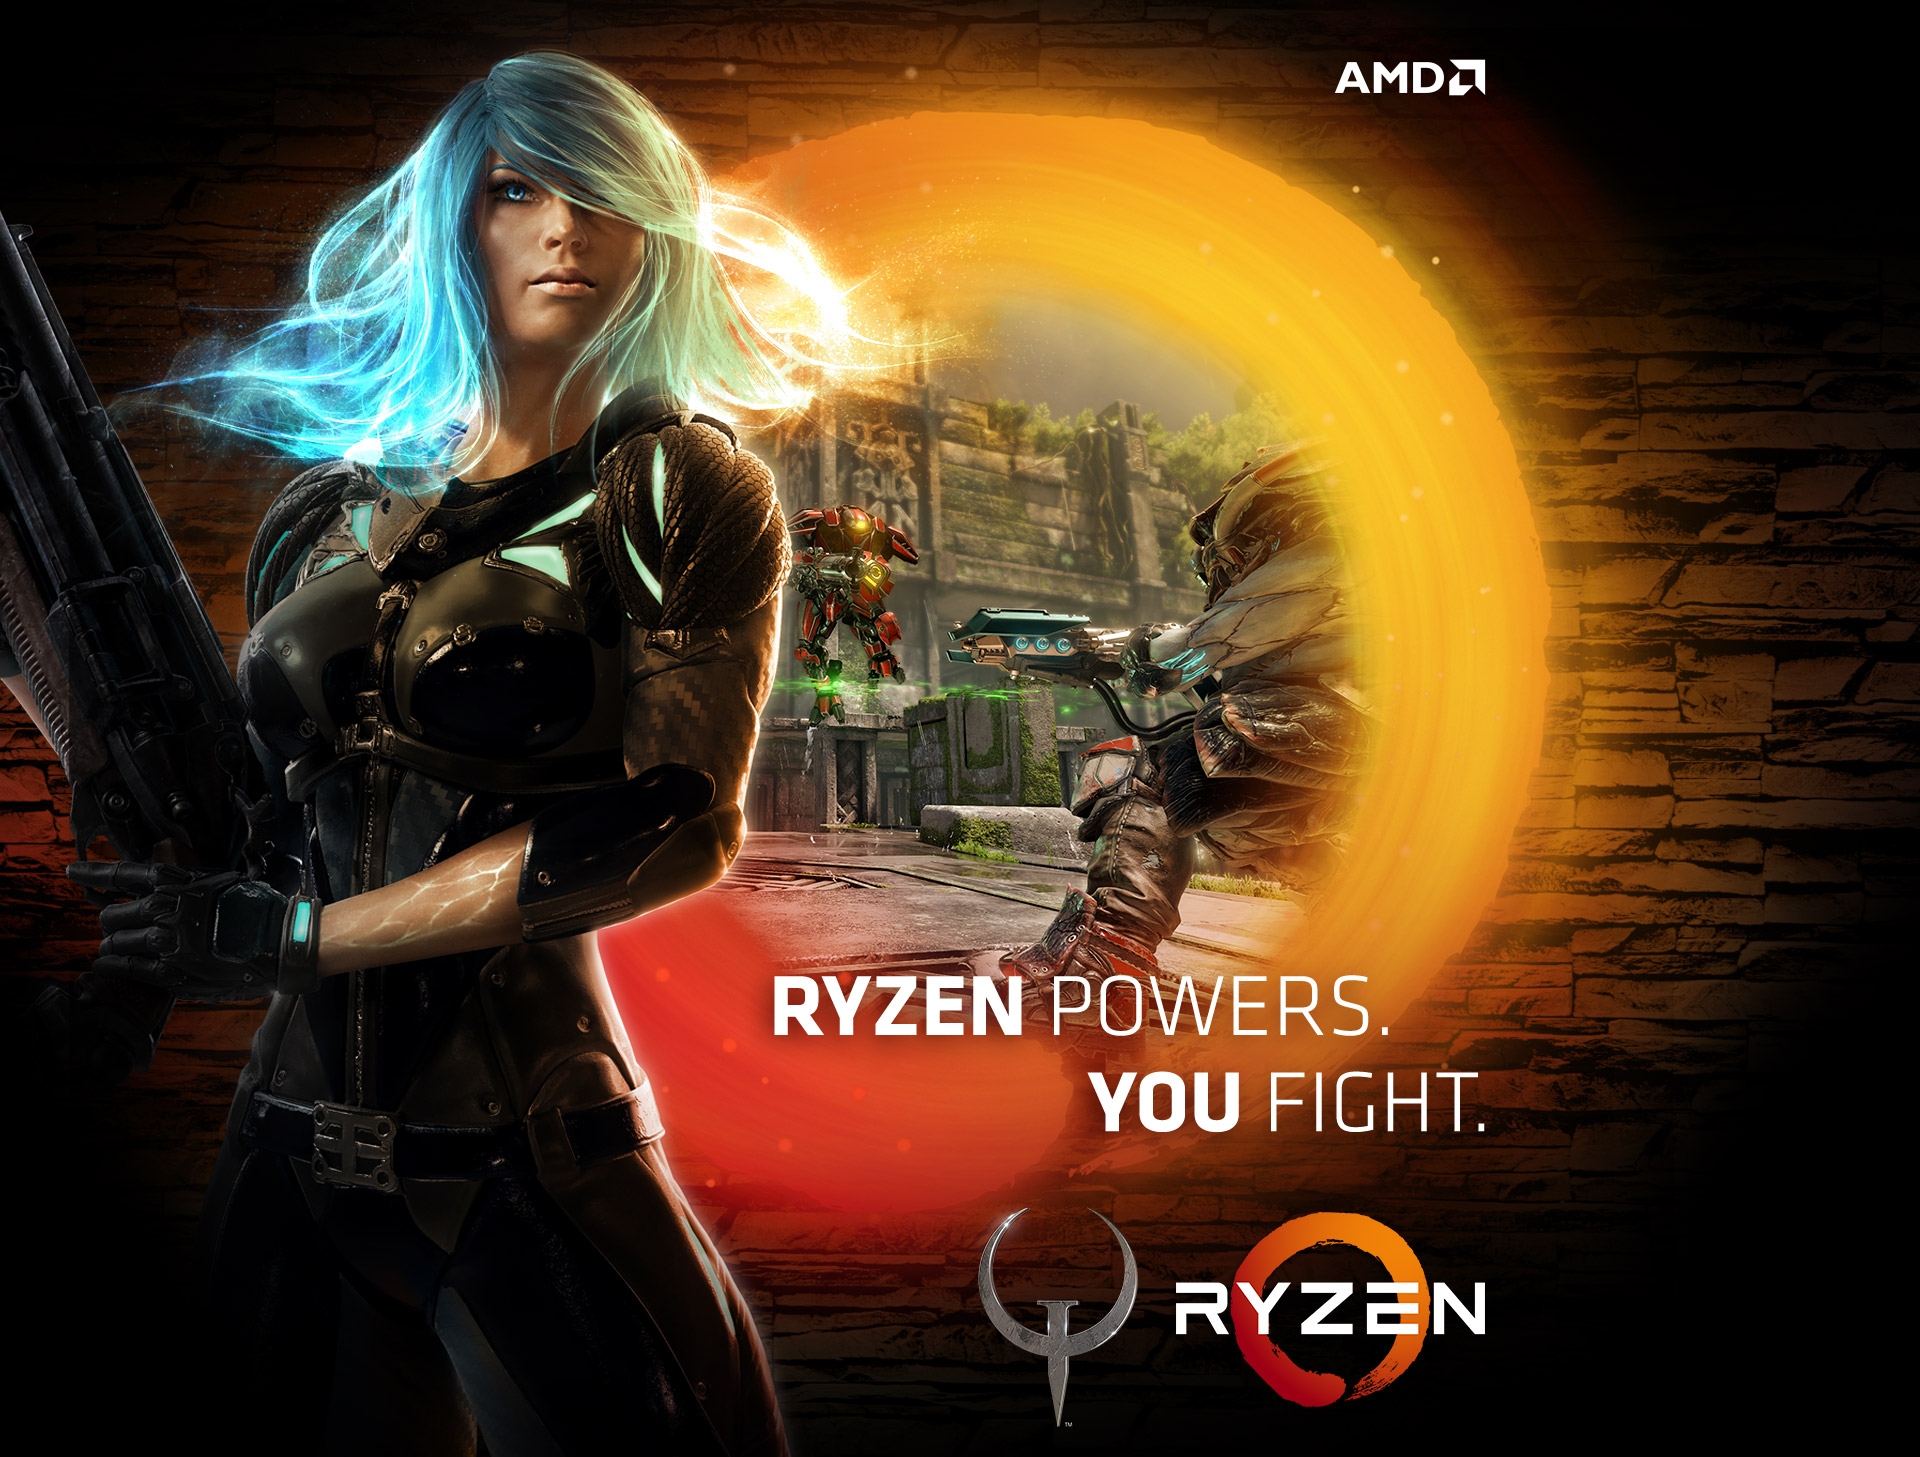 Ryzen Powers. You Fight.